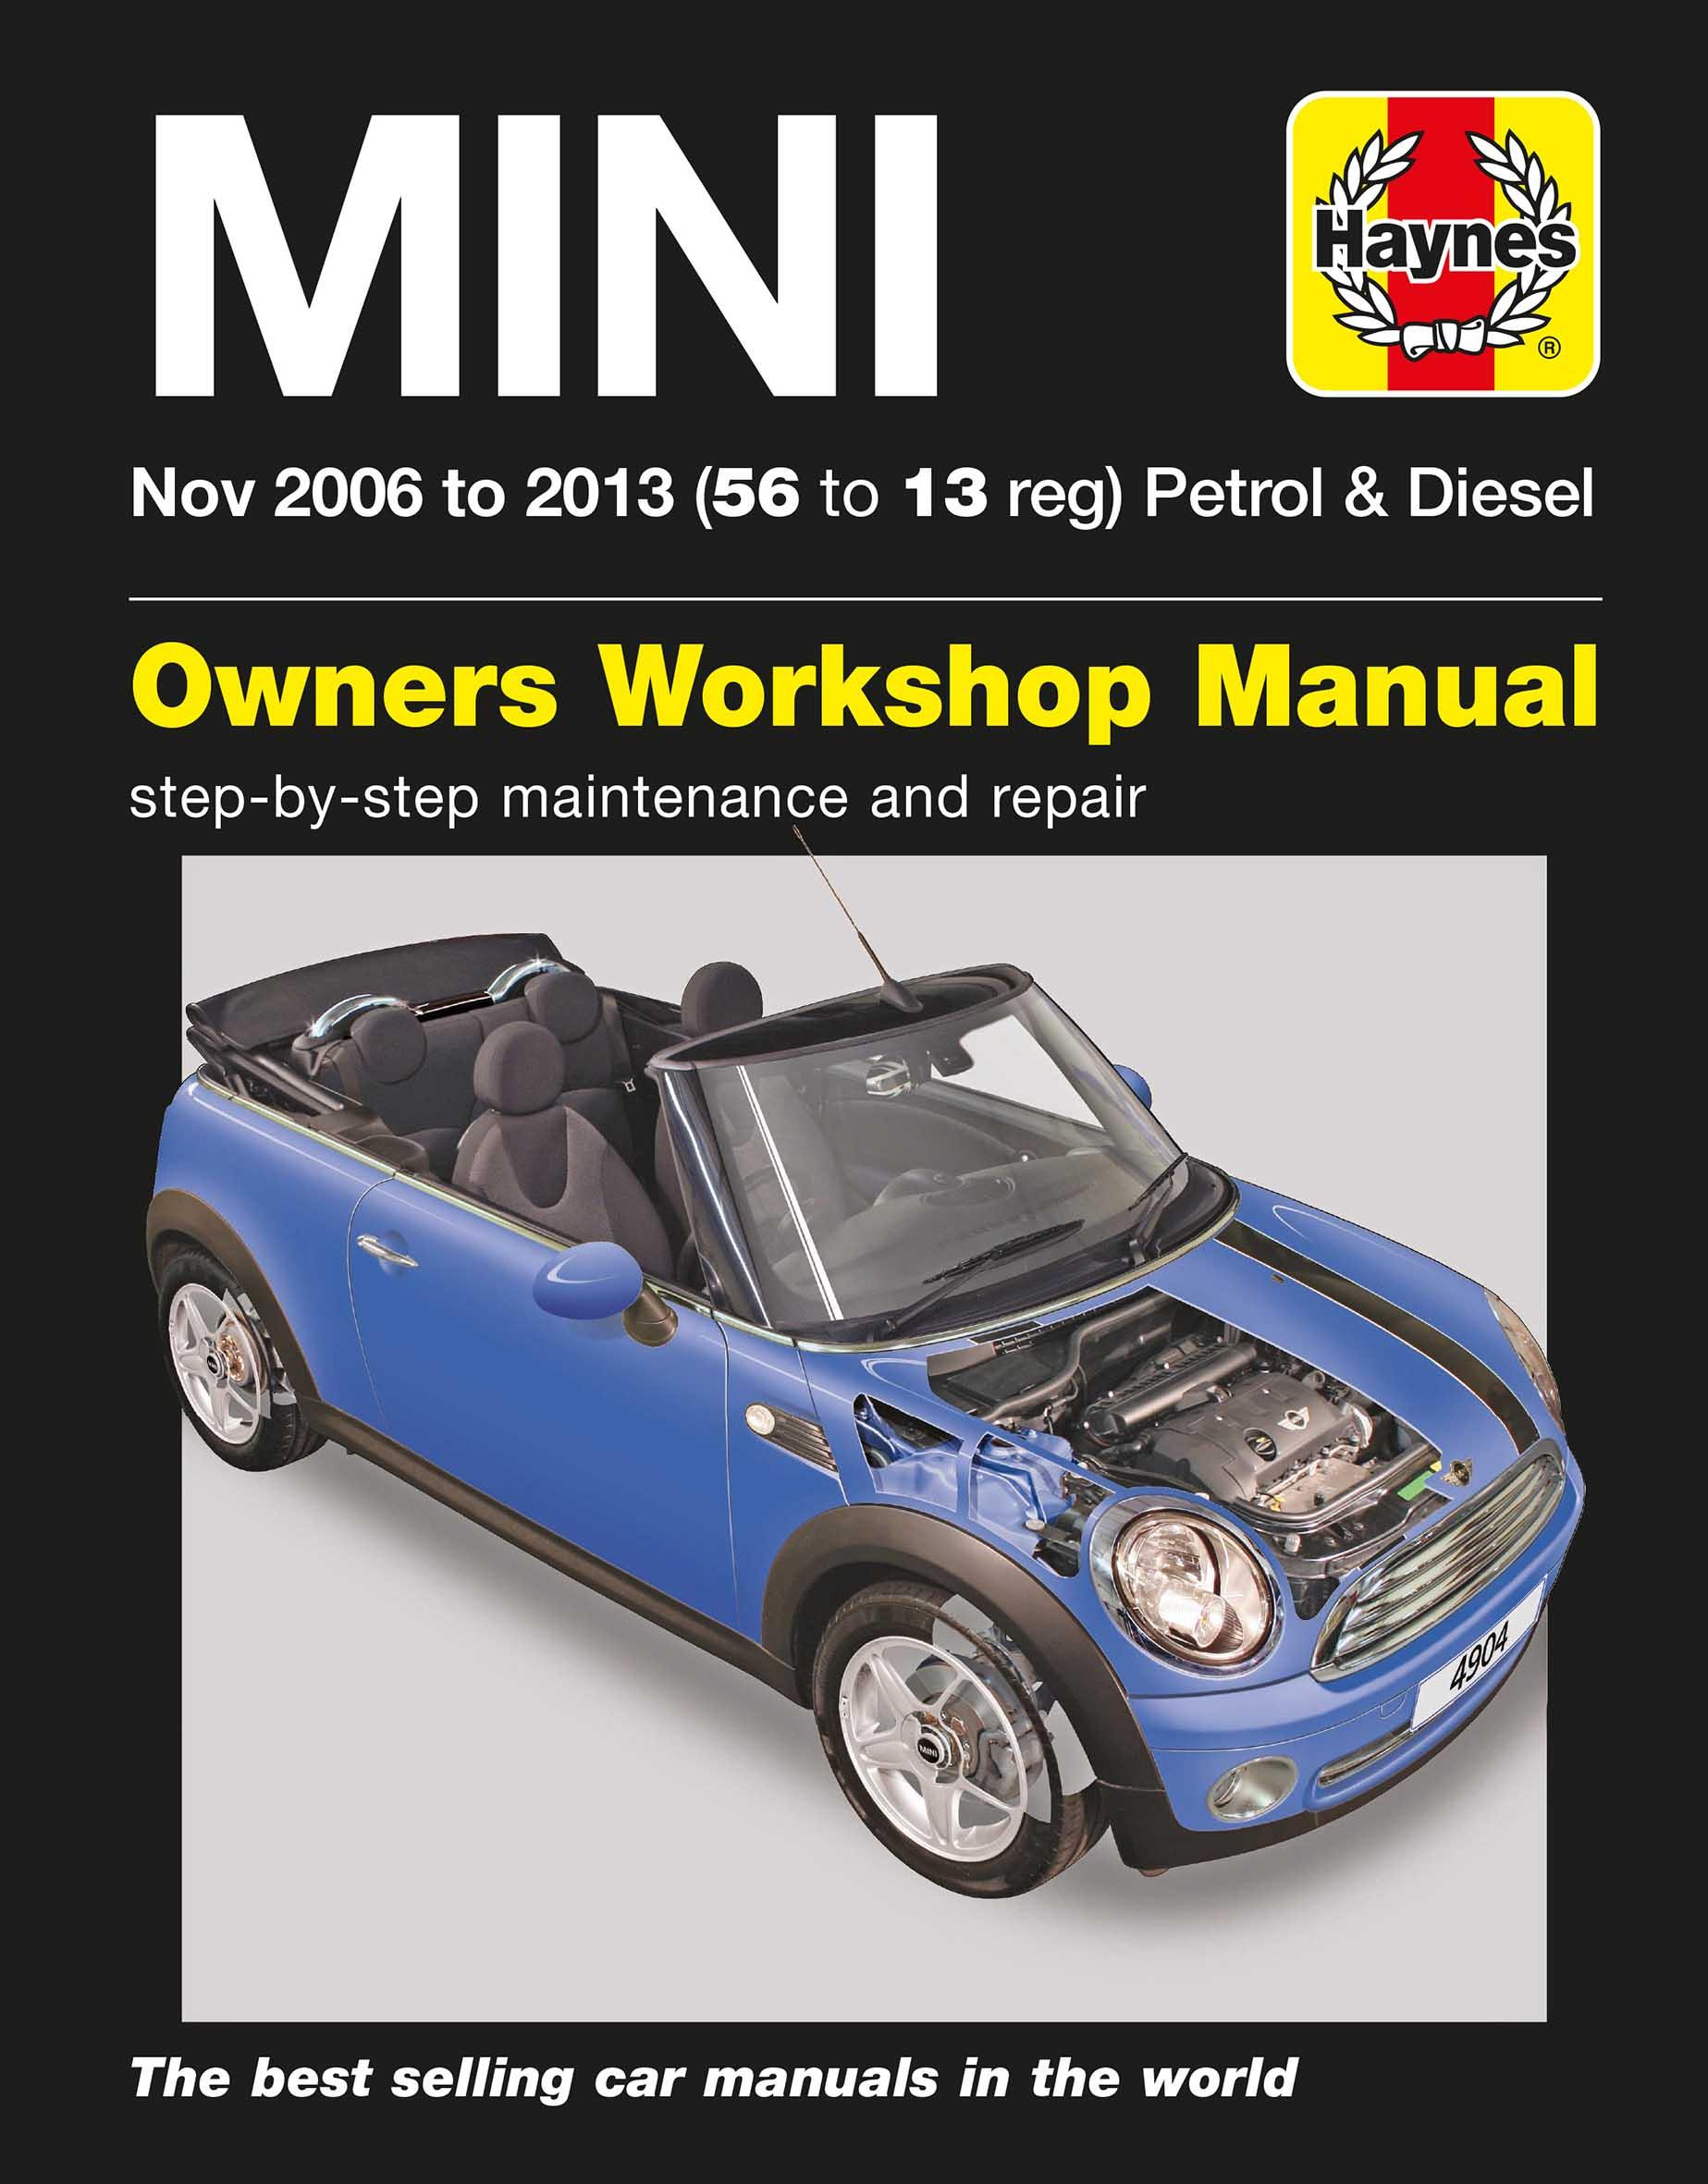 Haynes Mini Petrol & Diesel Manual (Nov 06 - 13) 56 To 13